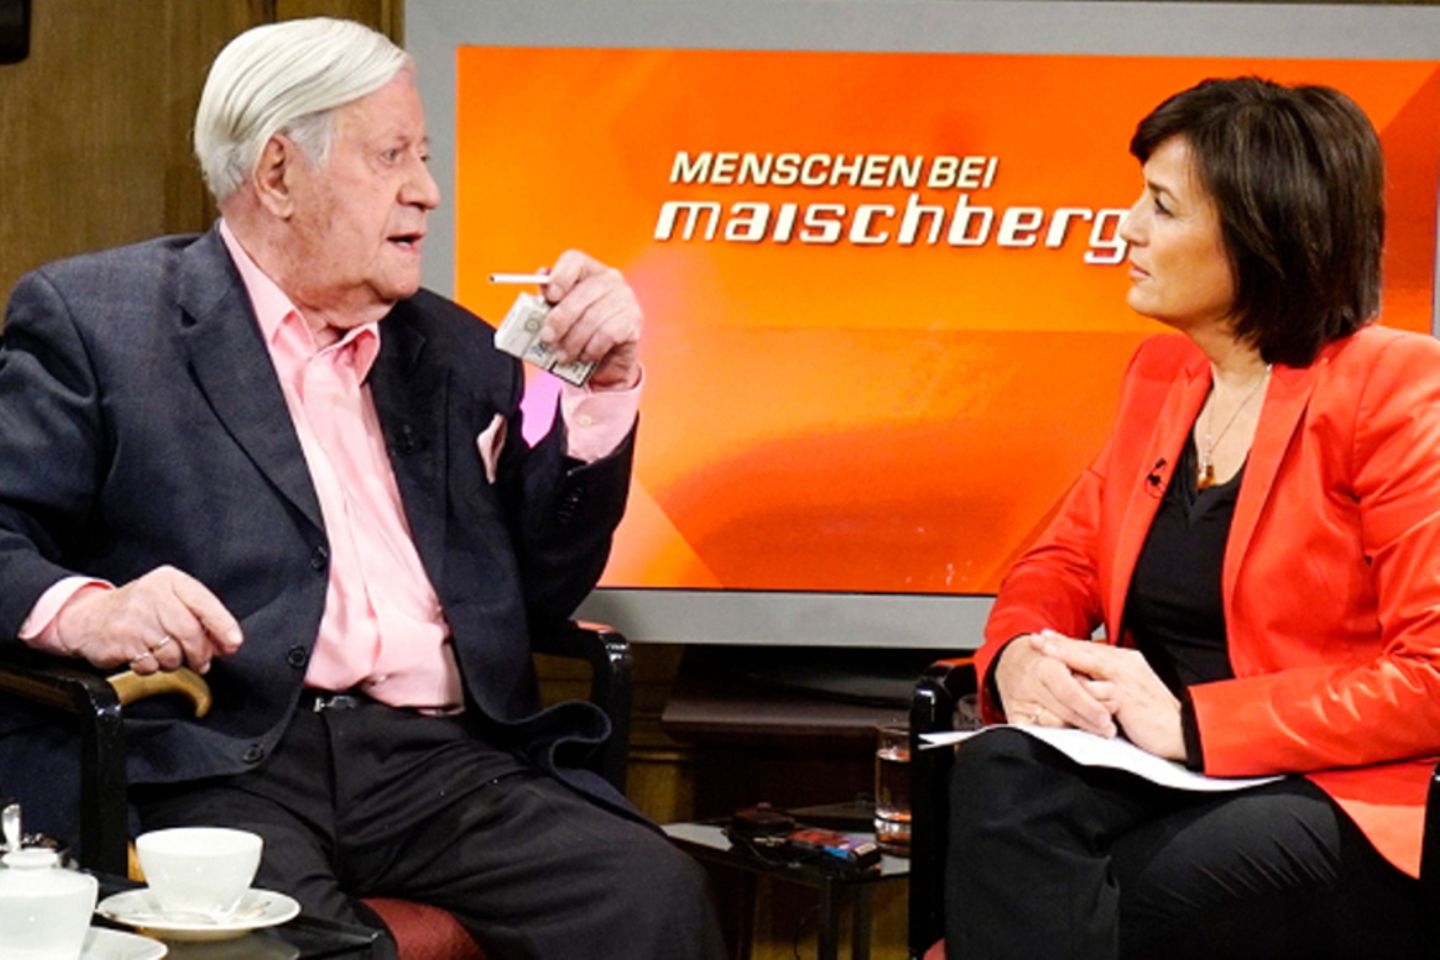 Helmut Schmidt bei Maischberger: "96 ist lästig"